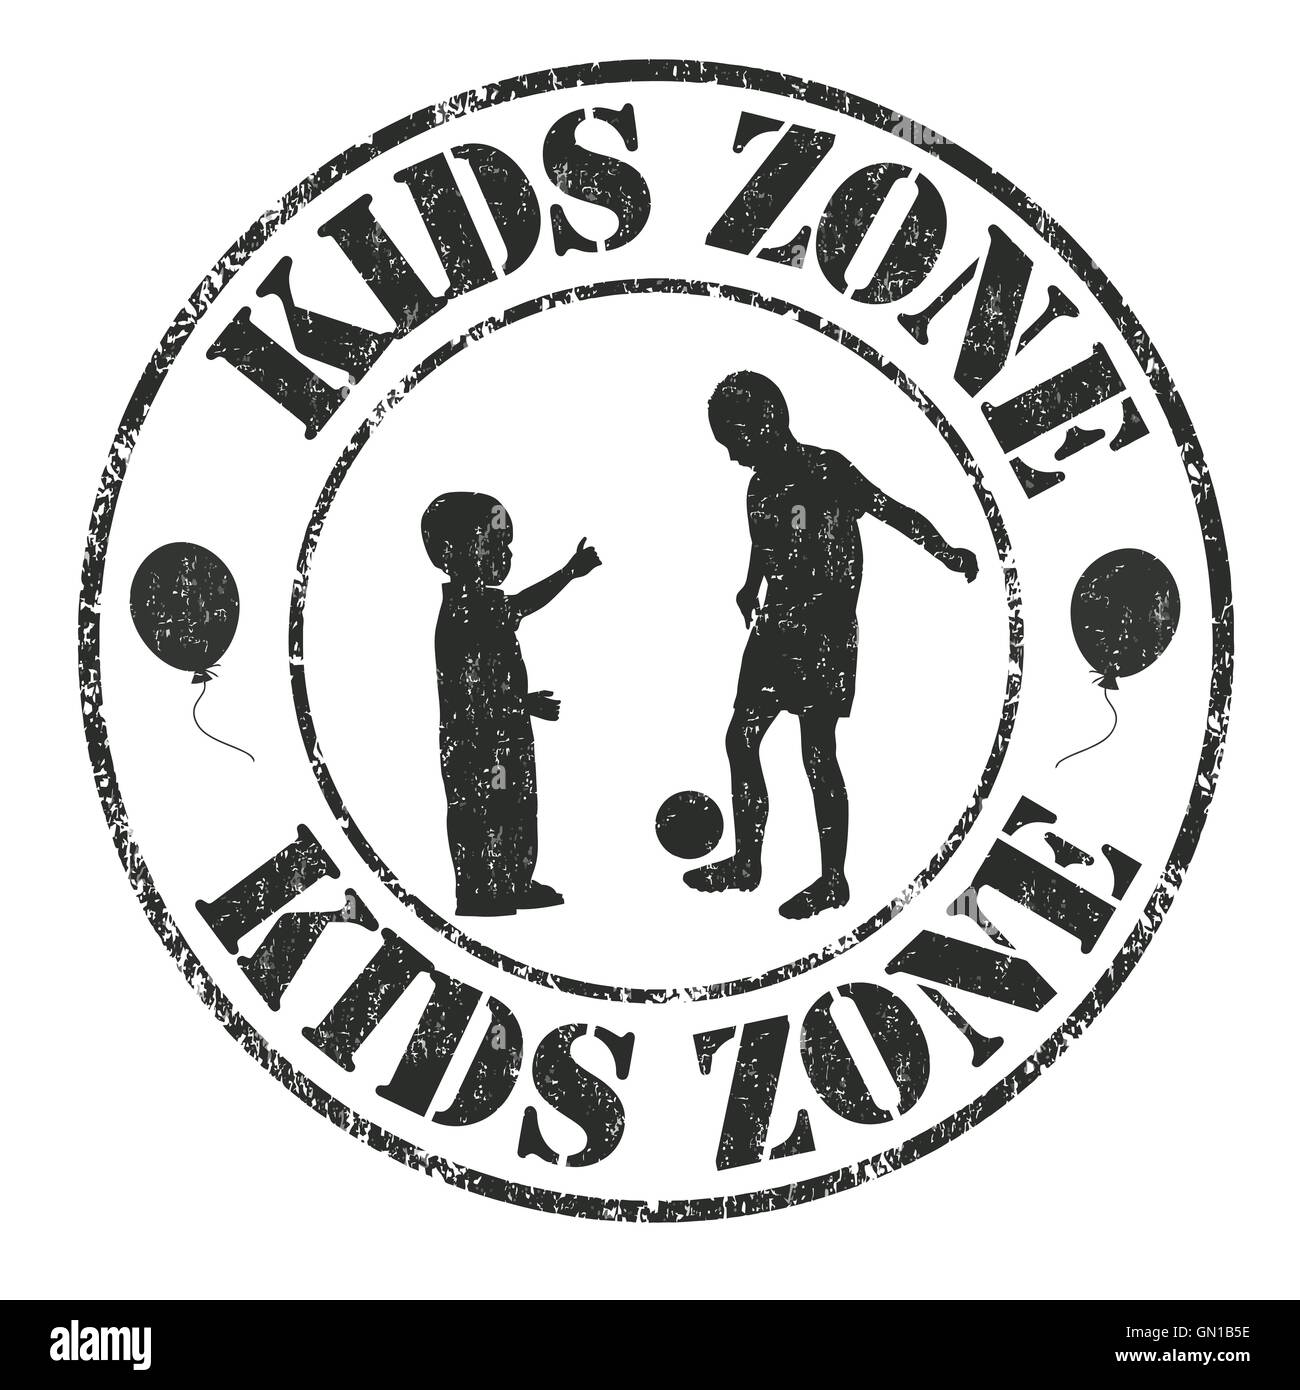 Kids zone stamp Stock Vector